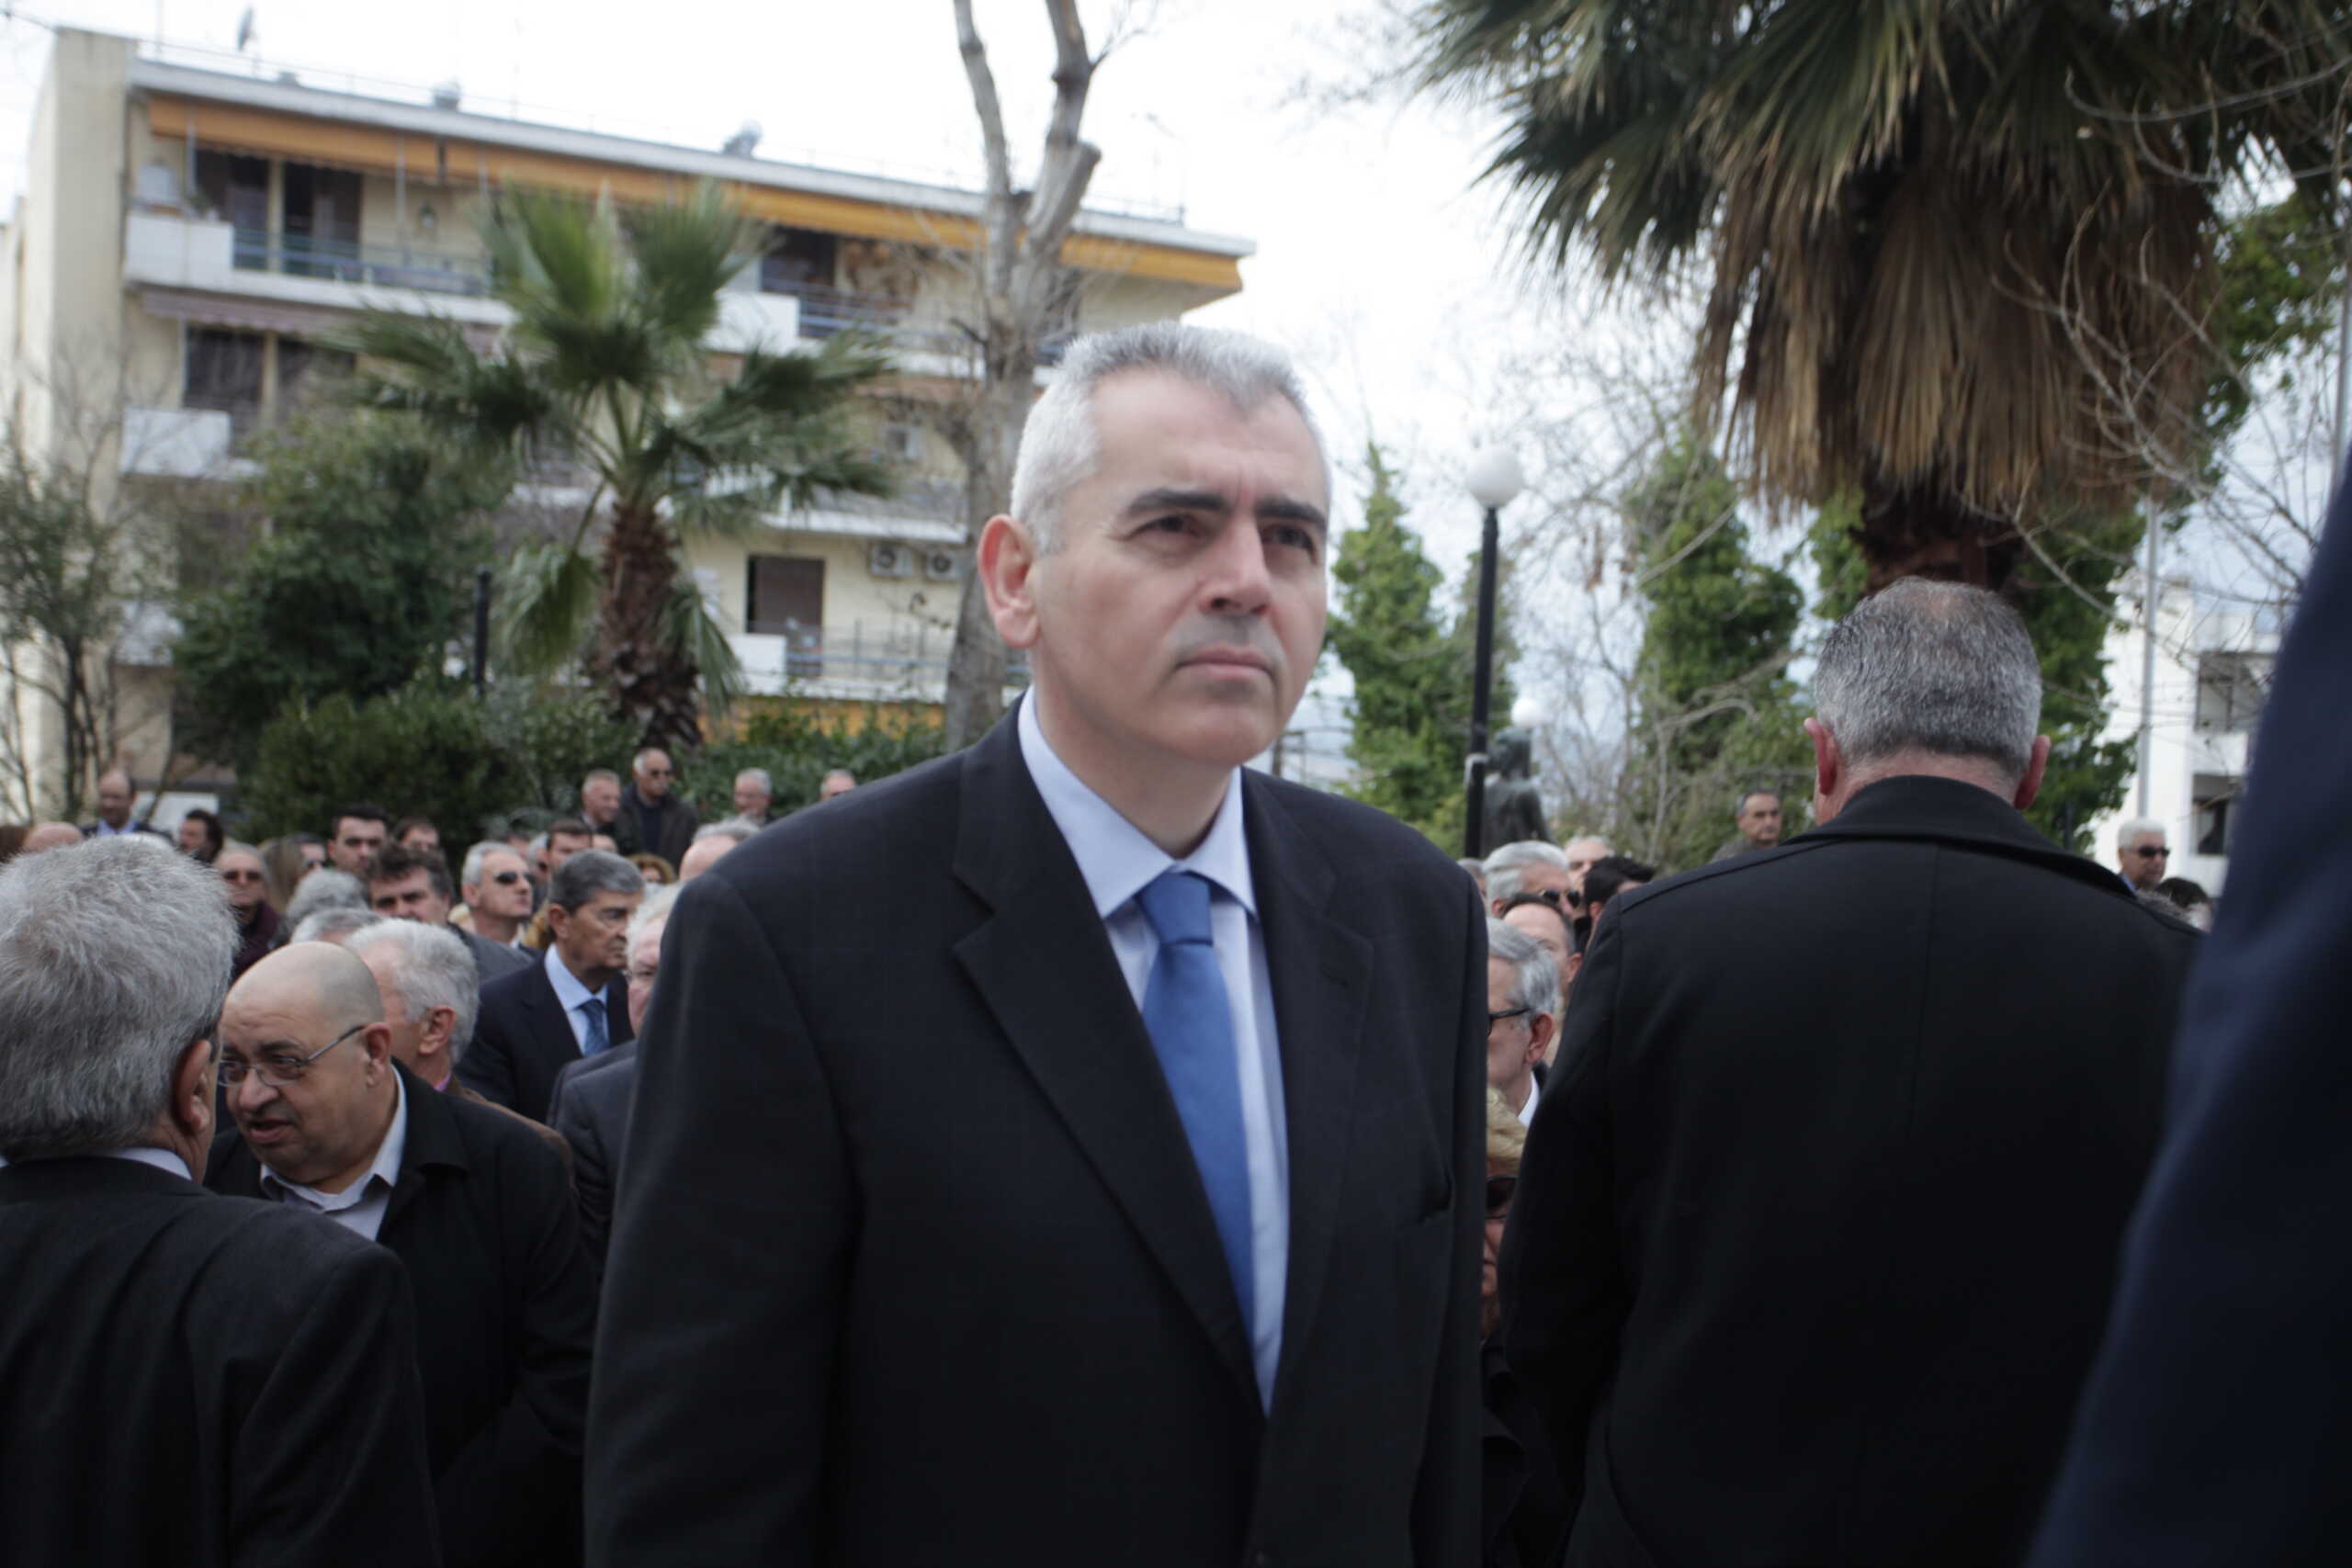 Ο Μάξιμος Χαρακόπουλος θα καταψηφίσει το νομοσχέδιο για τα ομόφυλα ζευγάρια